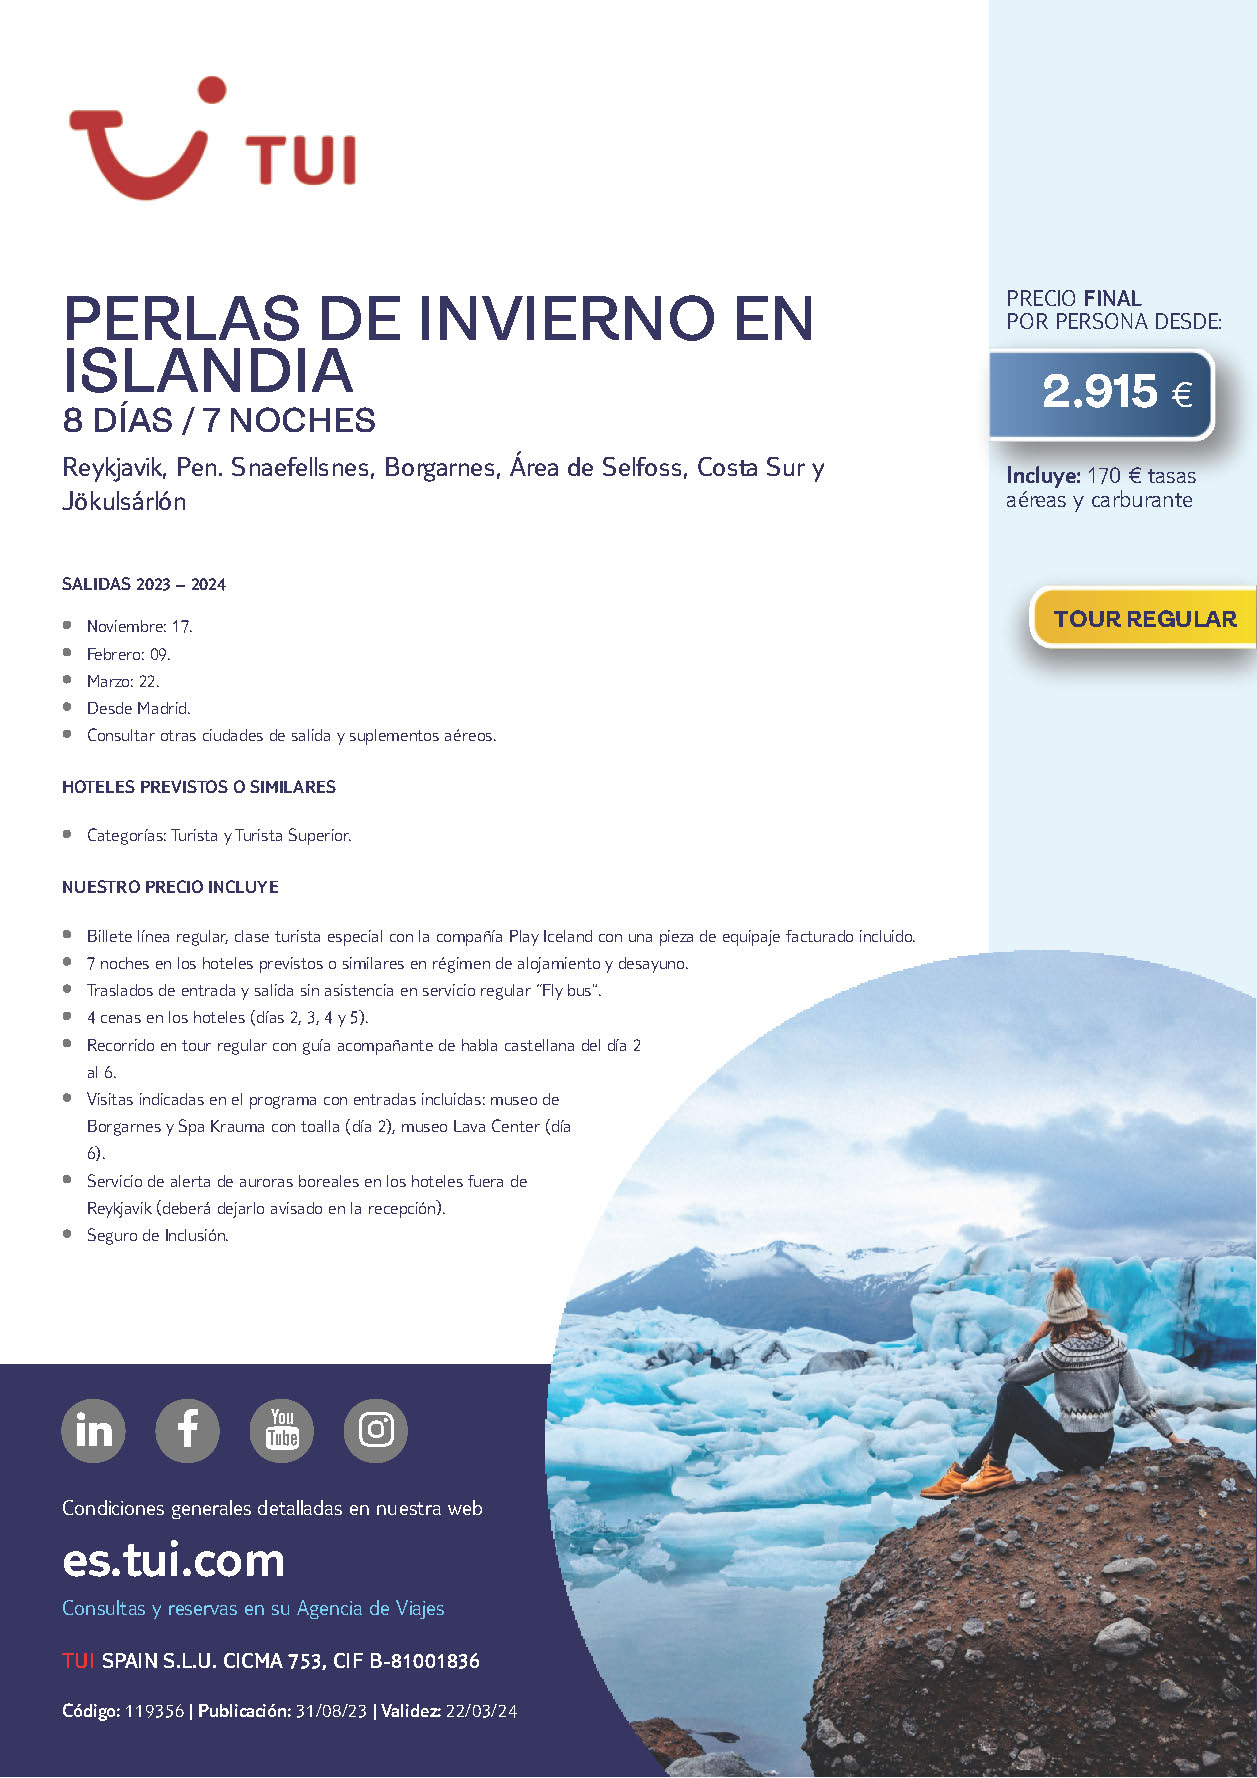 Oferta TUI circuito Perlas de Invierno en Islandia 8 dias salidas Octubre 2023 a Marzo 2024 desde Madrid